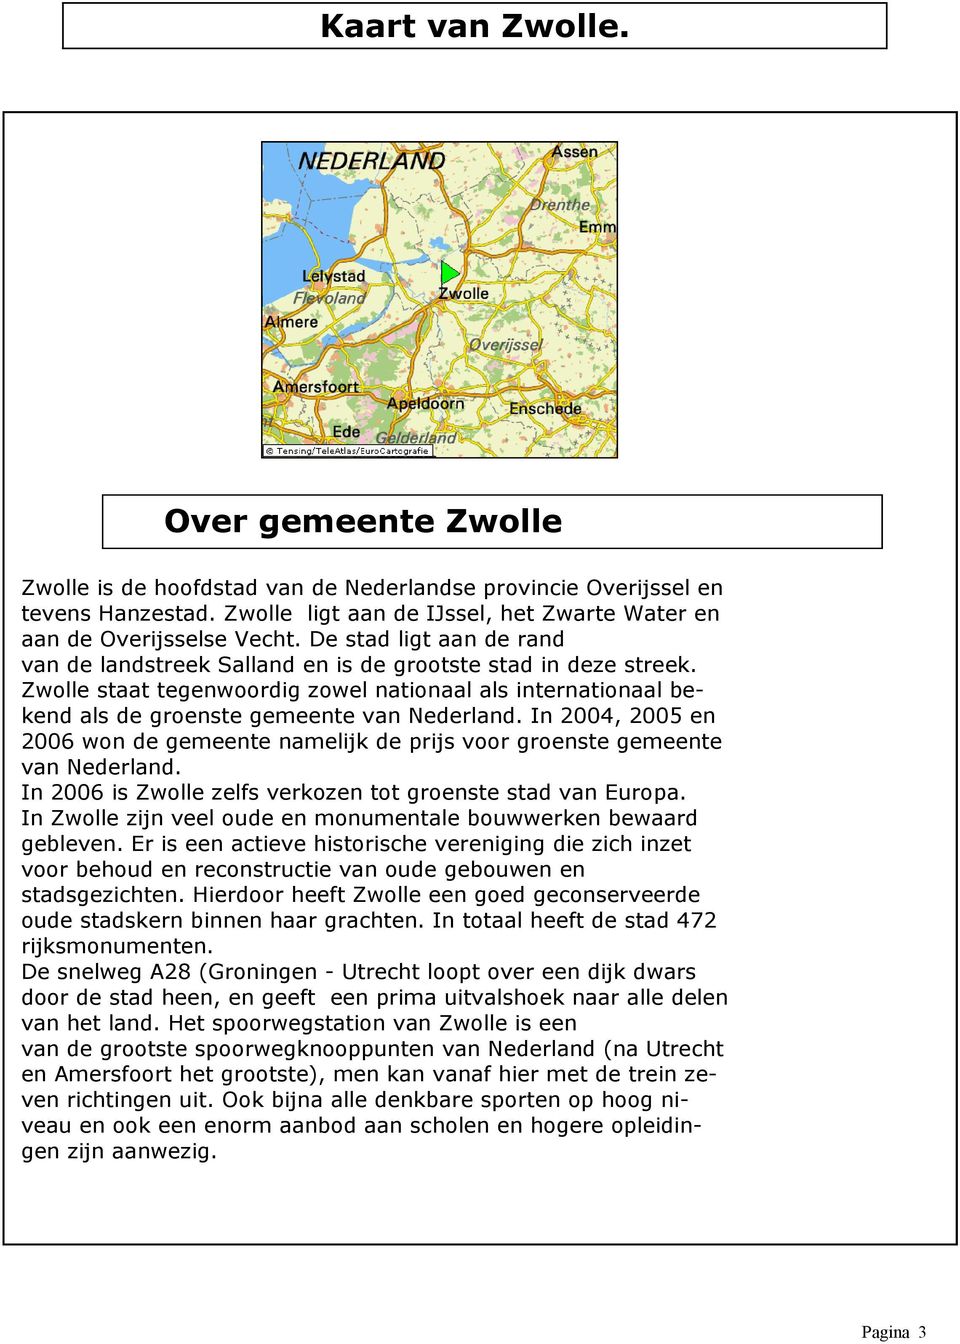 In 2004, 2005 en 2006 won de gemeente namelijk de prijs voor groenste gemeente van Nederland. In 2006 is Zwolle zelfs verkozen tot groenste stad van Europa.